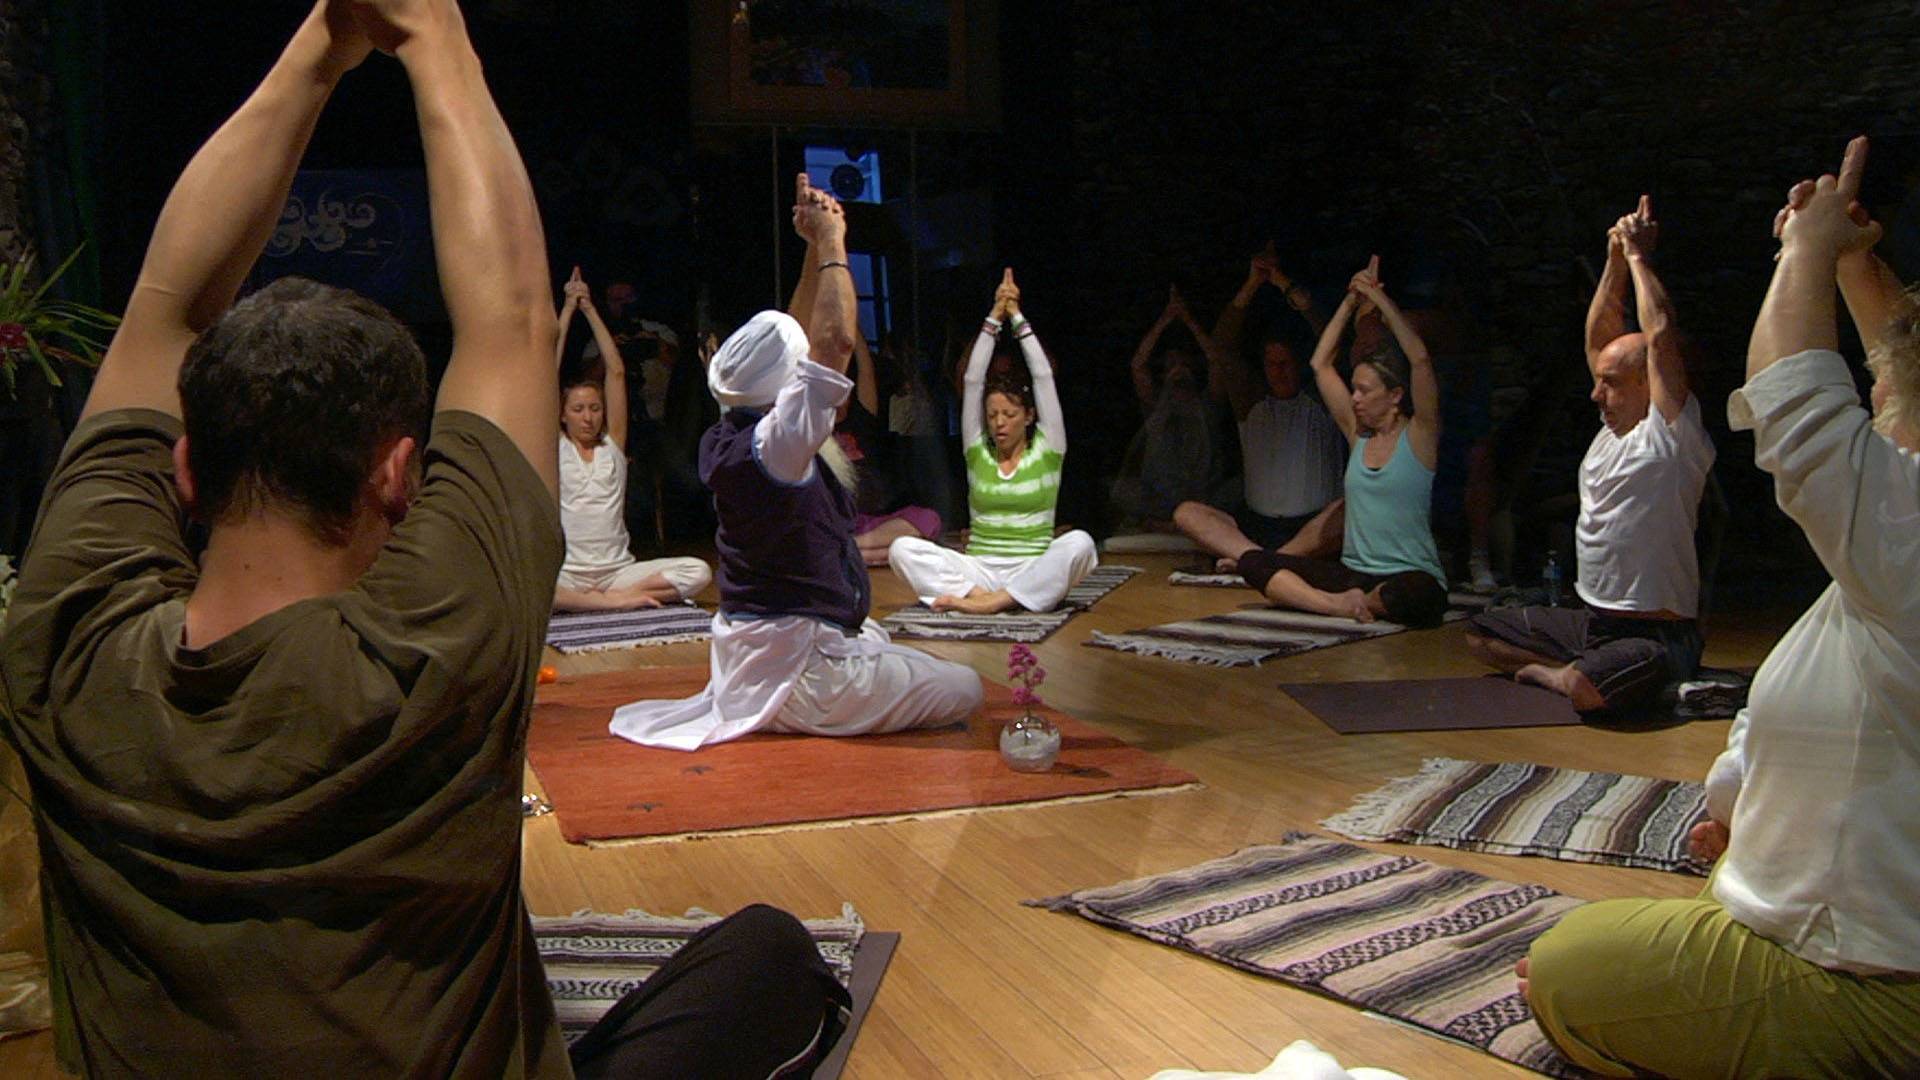 Хатха йога: что это такое и зачем она нужна, а также что дает практика, ее польза и вред